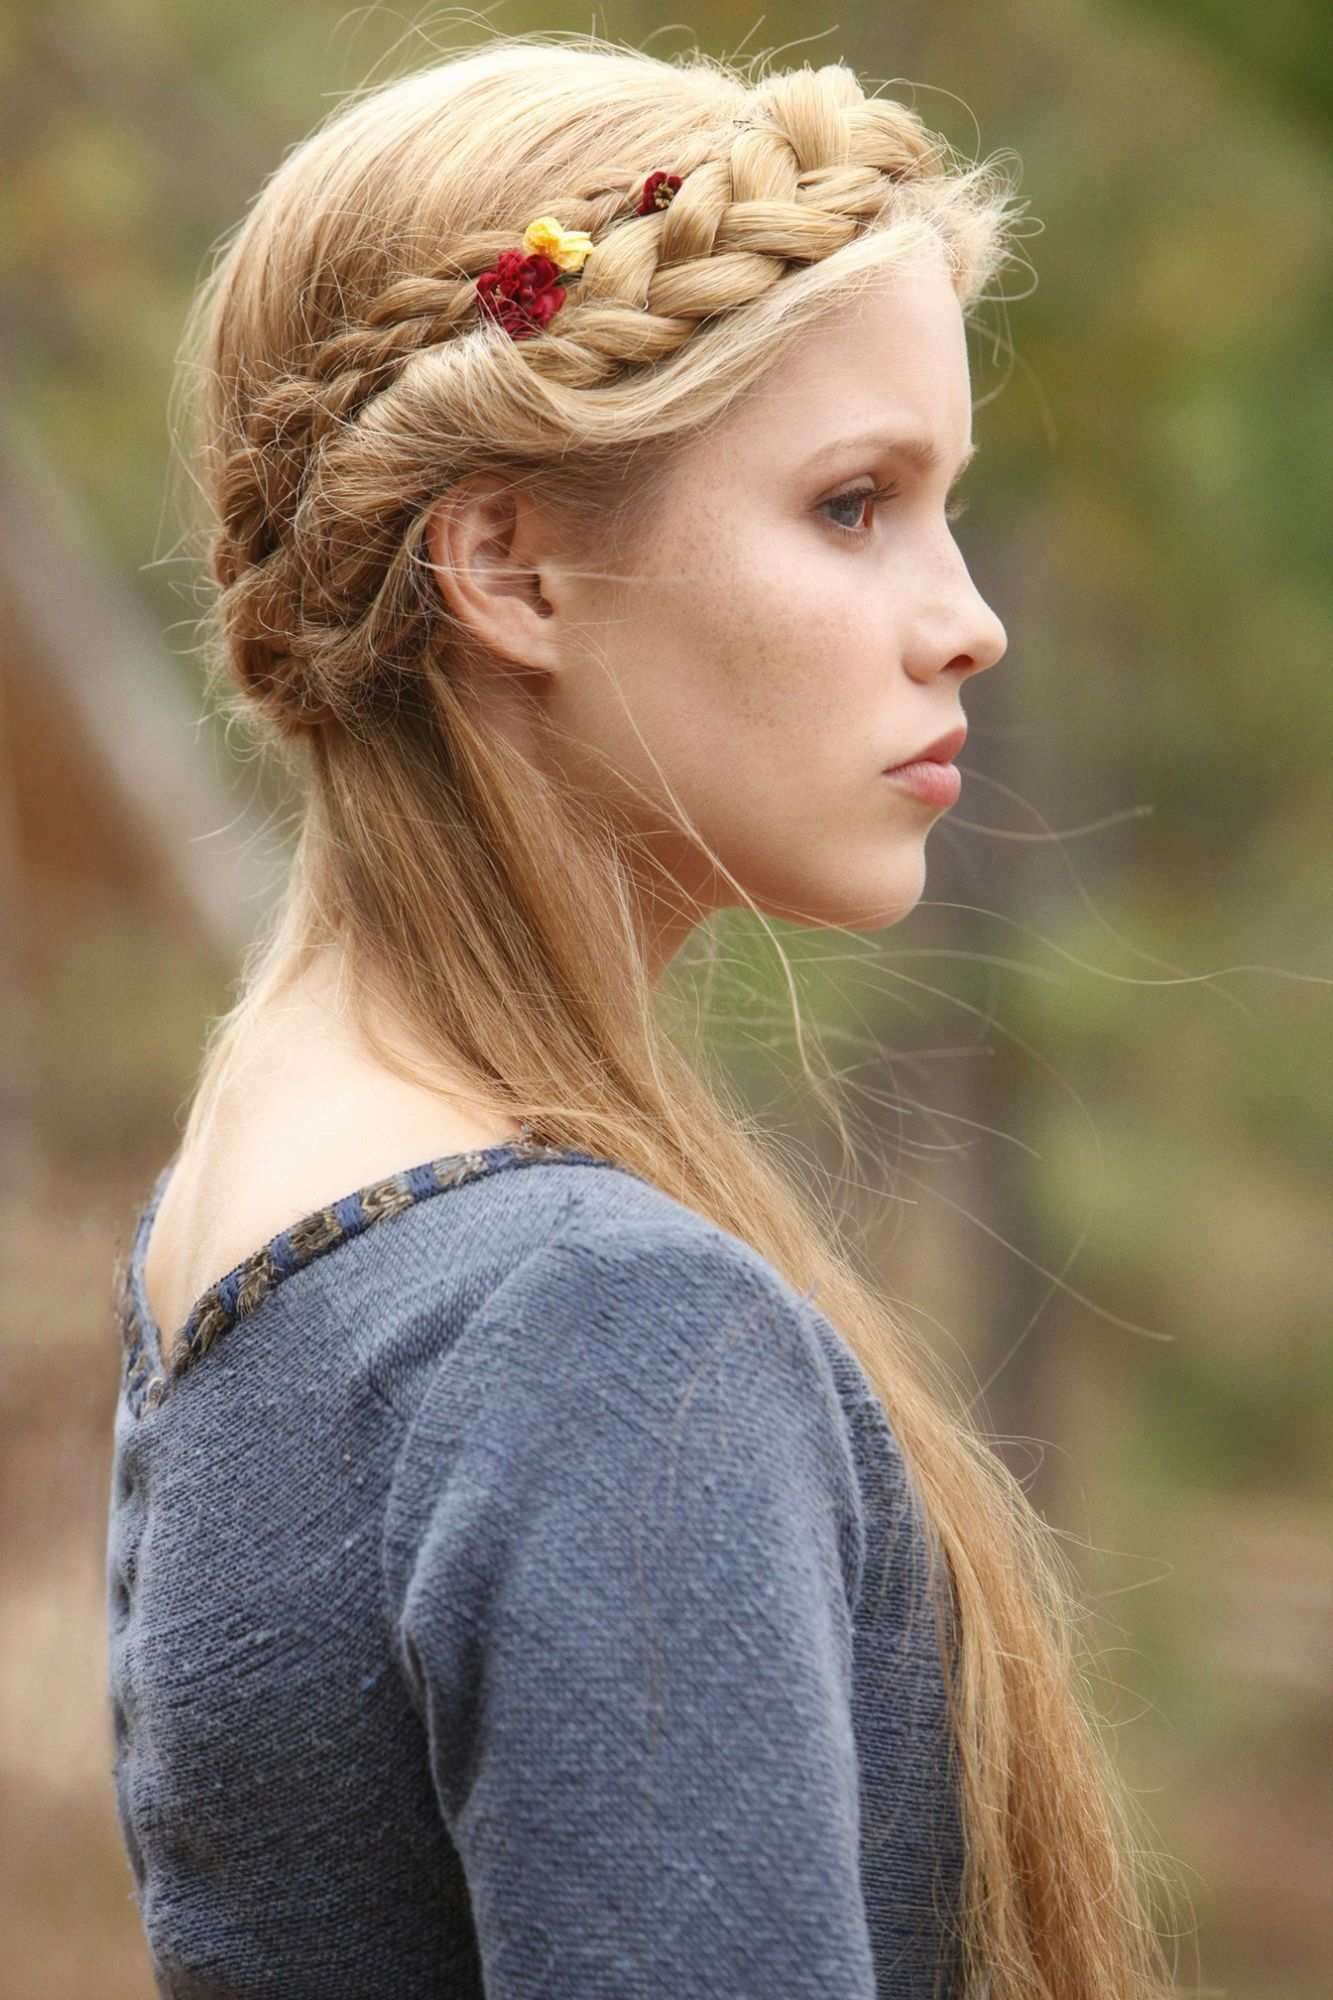 Claire Holt nei panni di Rebekah Mikaelson